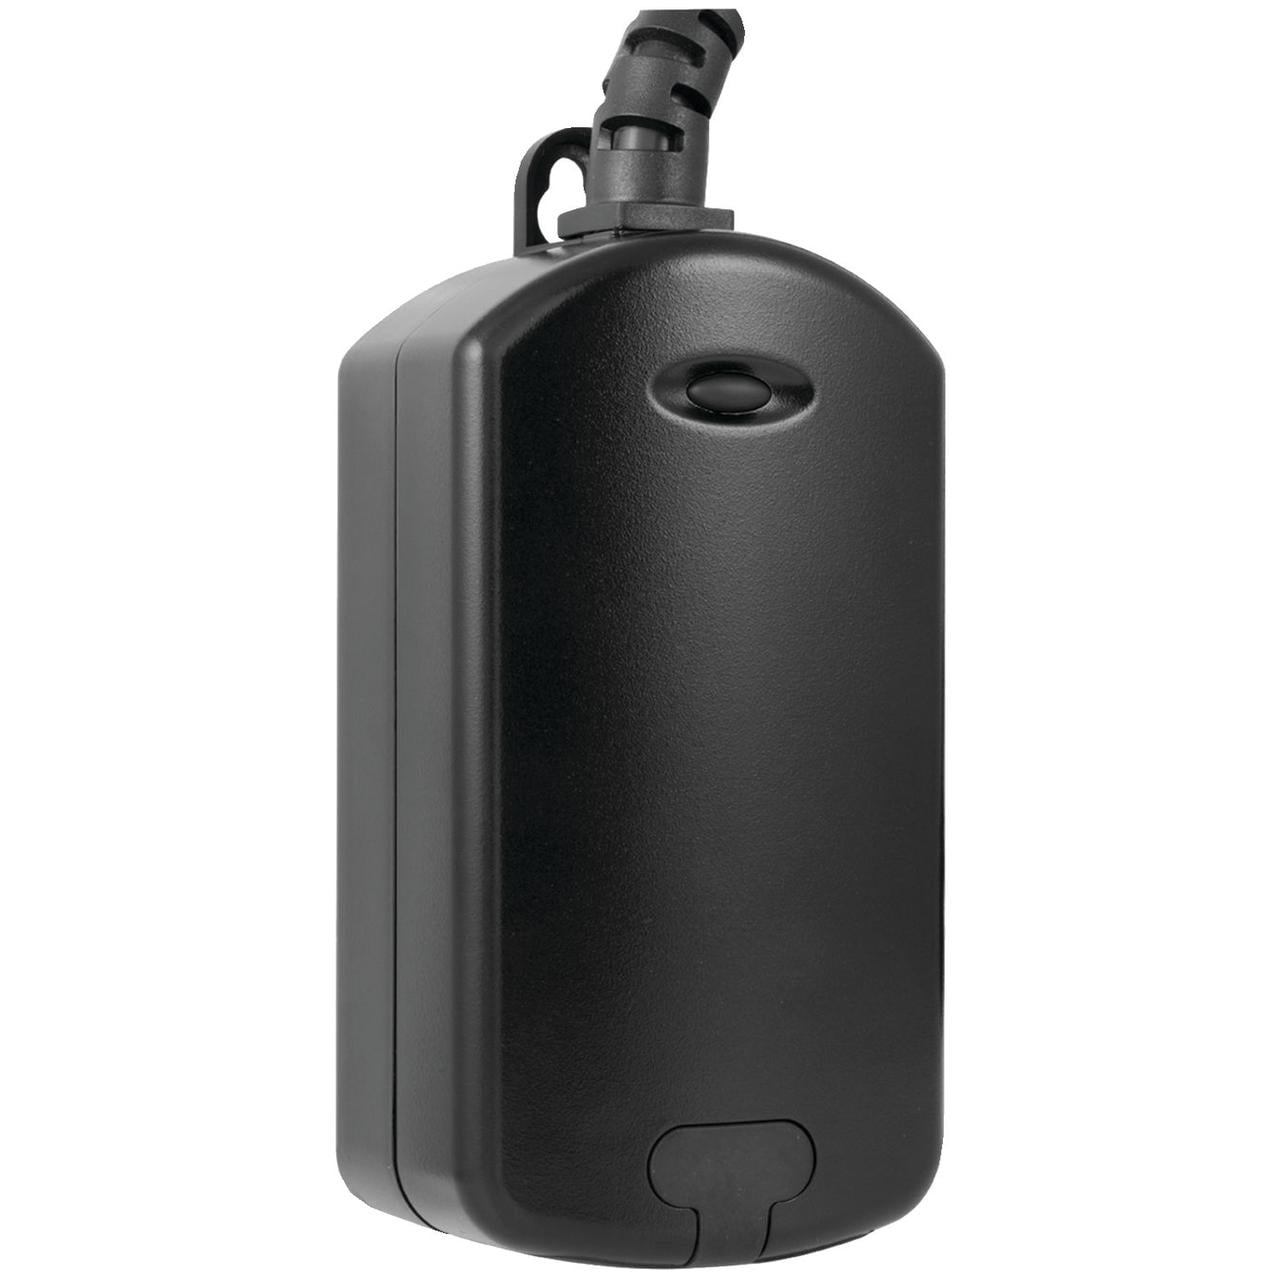 Best Buy: GE Z-Wave Plus Wireless Plug-In Outdoor Smart Switch Black 14284